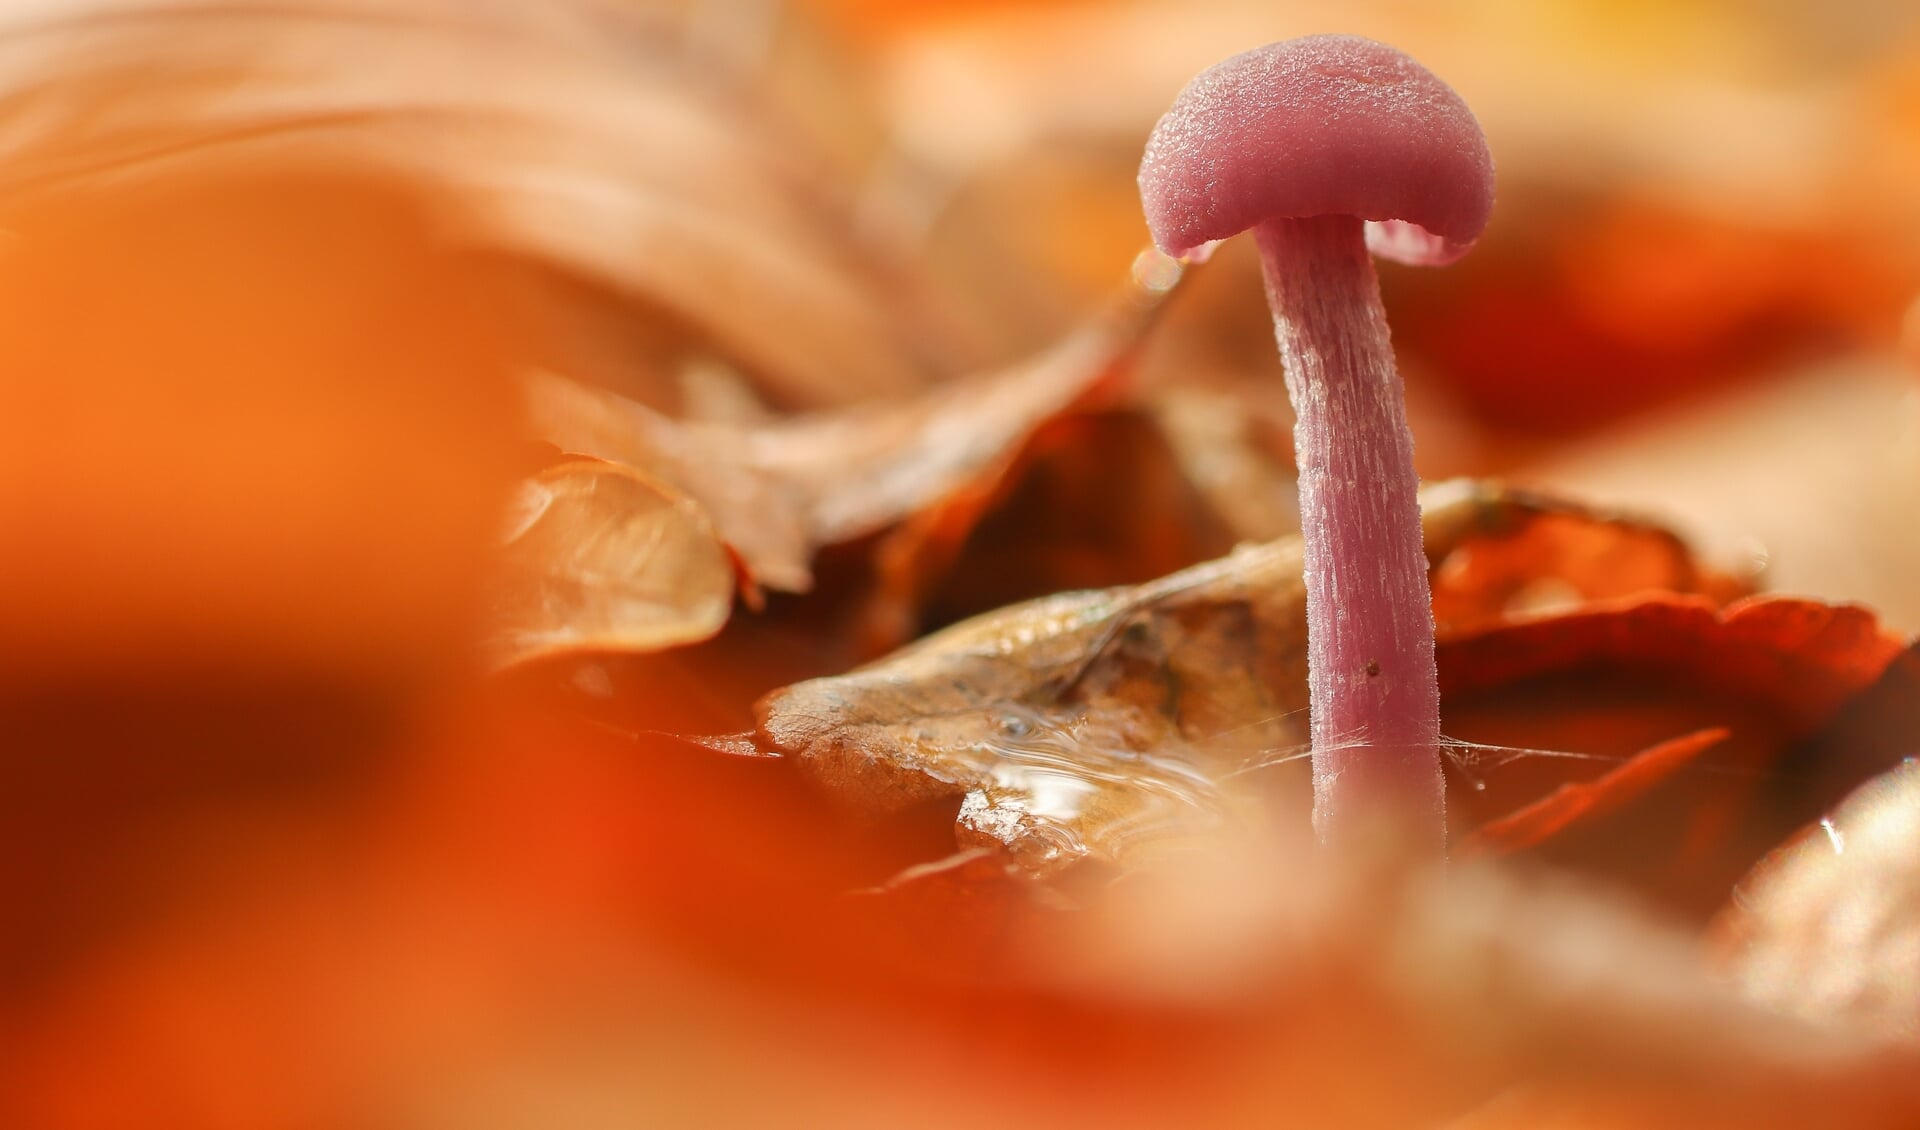 Met deze foto van een paddenstoel won Cindy Kuiphuis de categorie volwassenen.